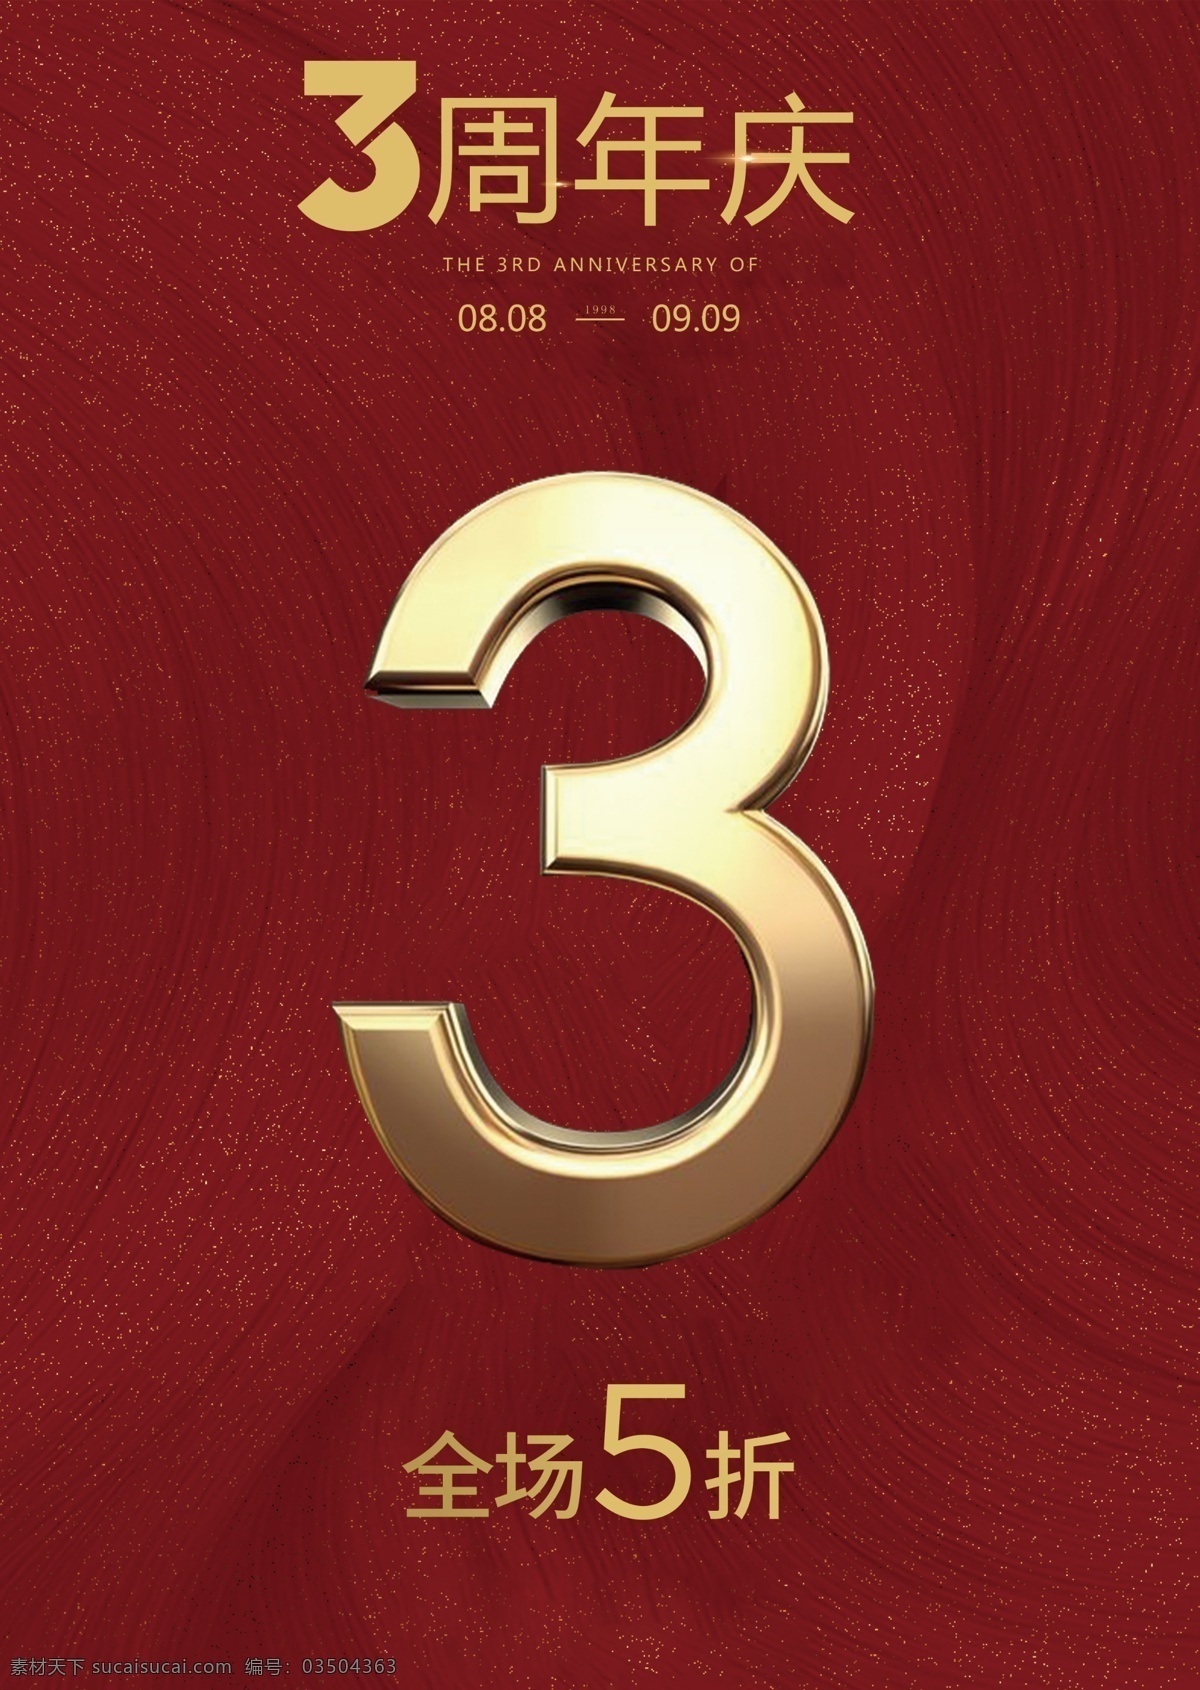 3周年庆 全场5折 红色图片 红色背景 中国红 高级红 金属3 立体3 数字3